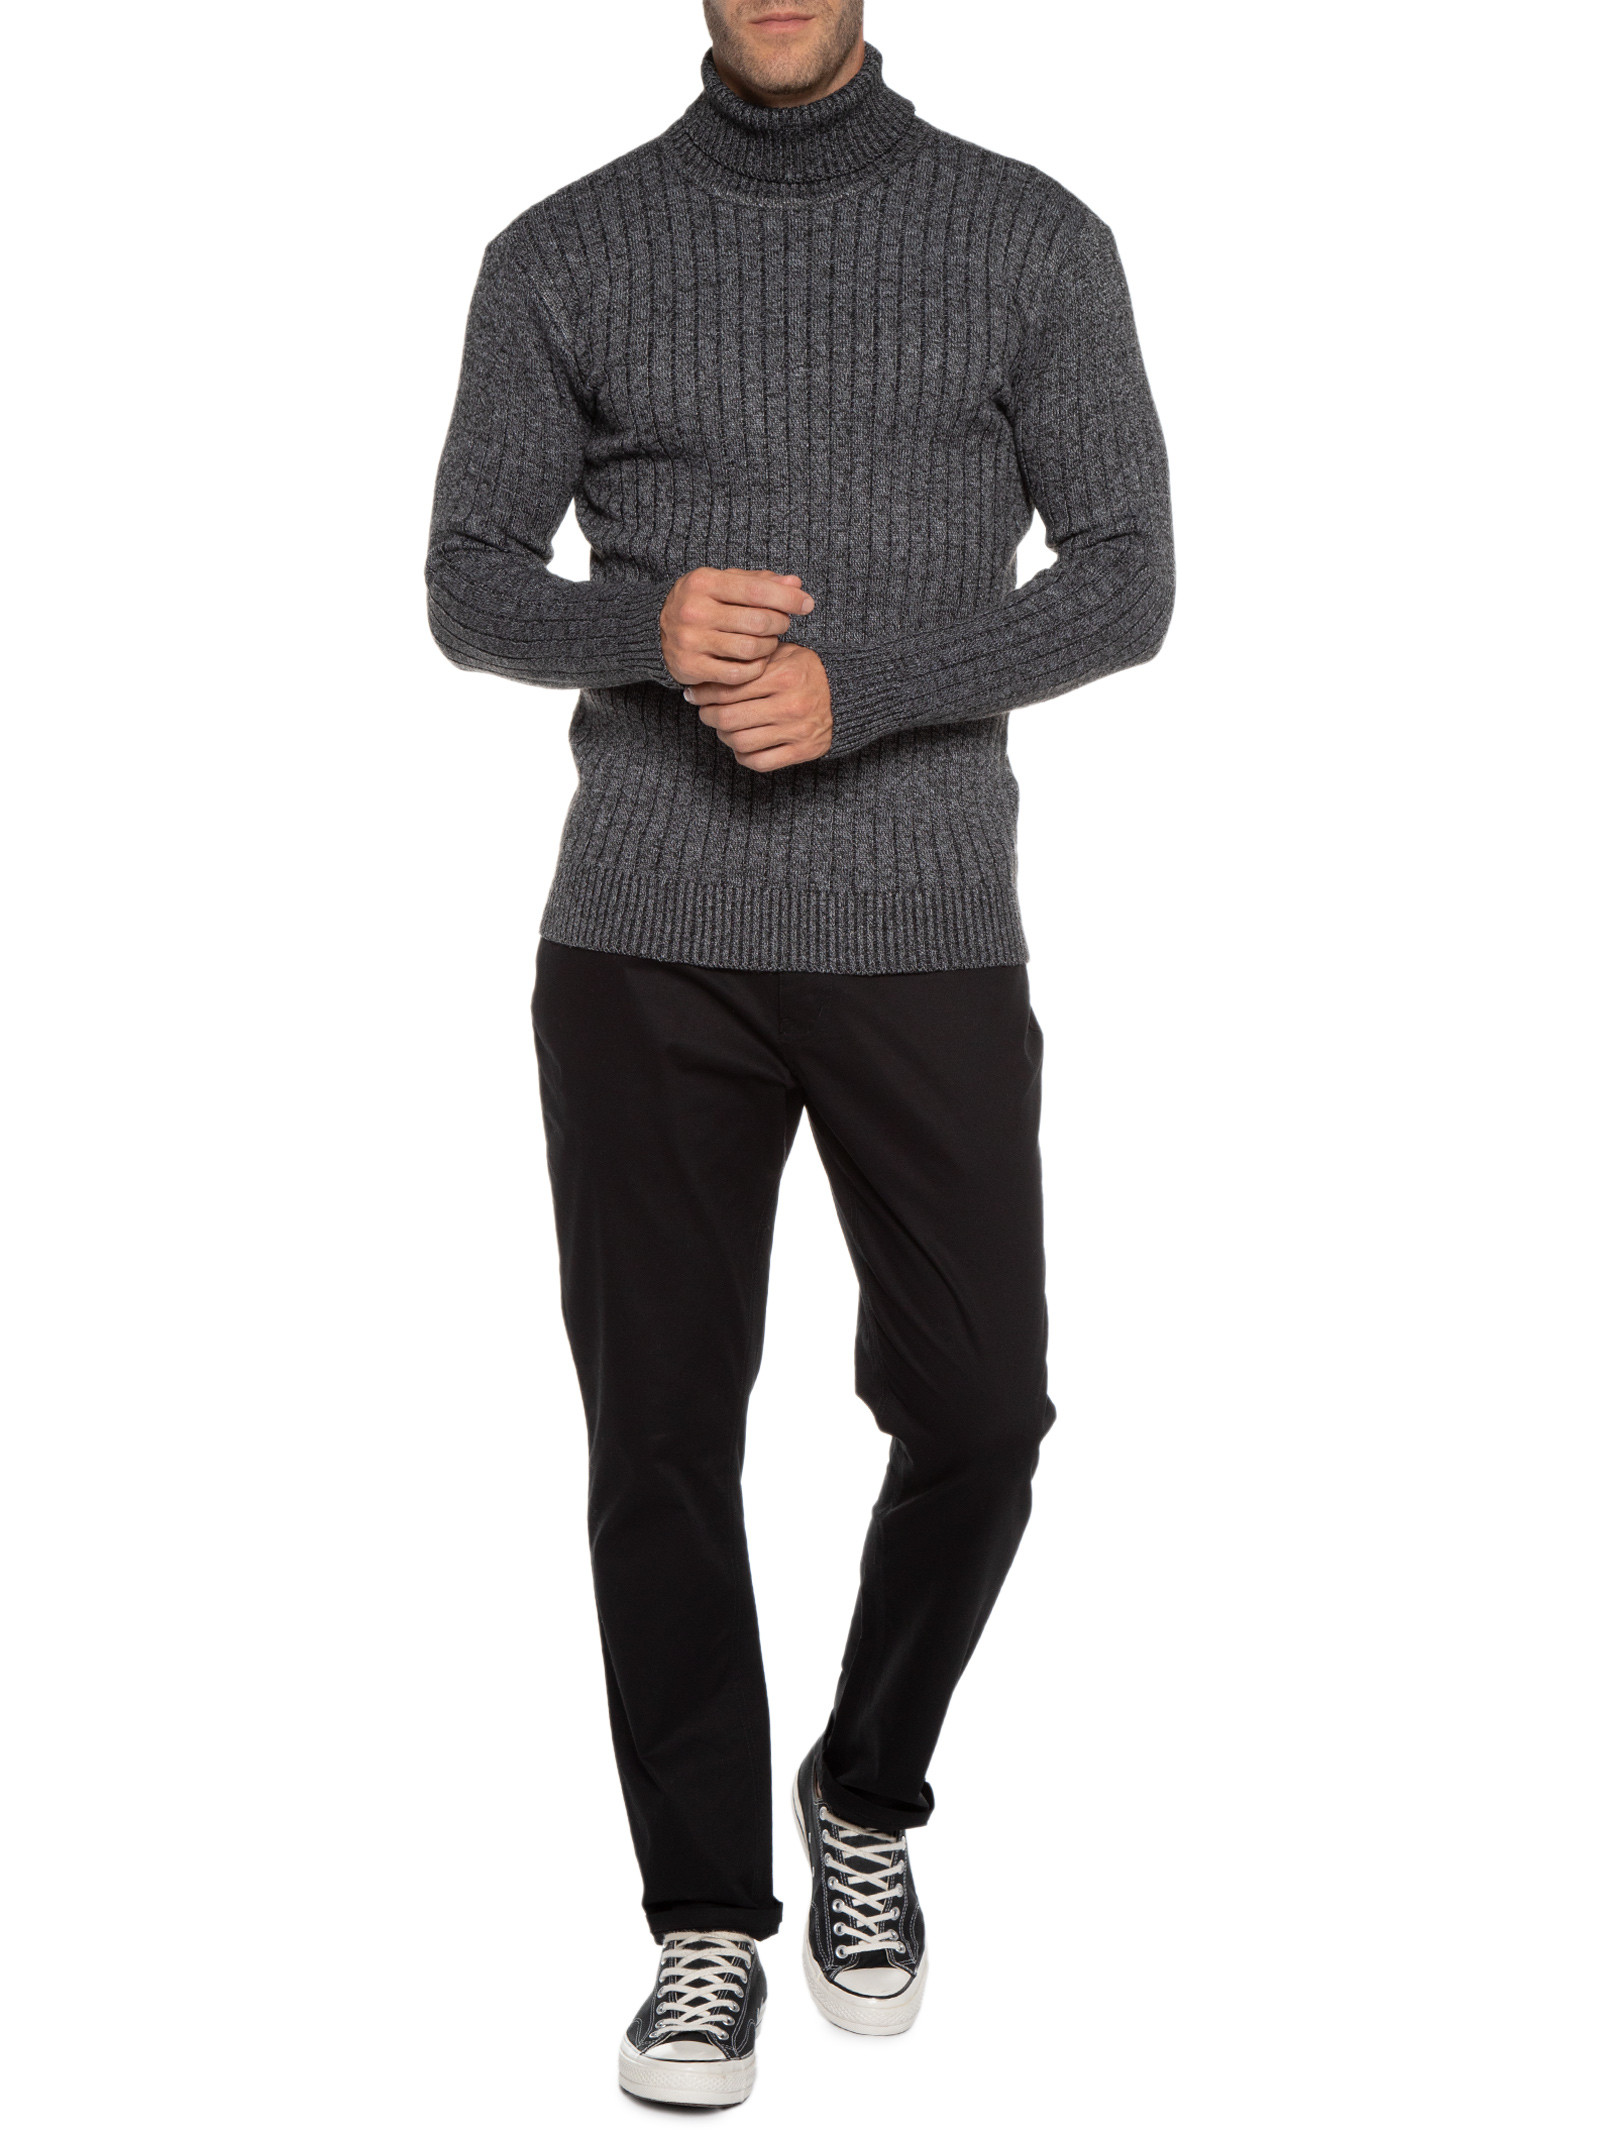 Sweater camisola Homem, poliéster, cor cinza, tricotado relevos torcidos -  AudaciouZ